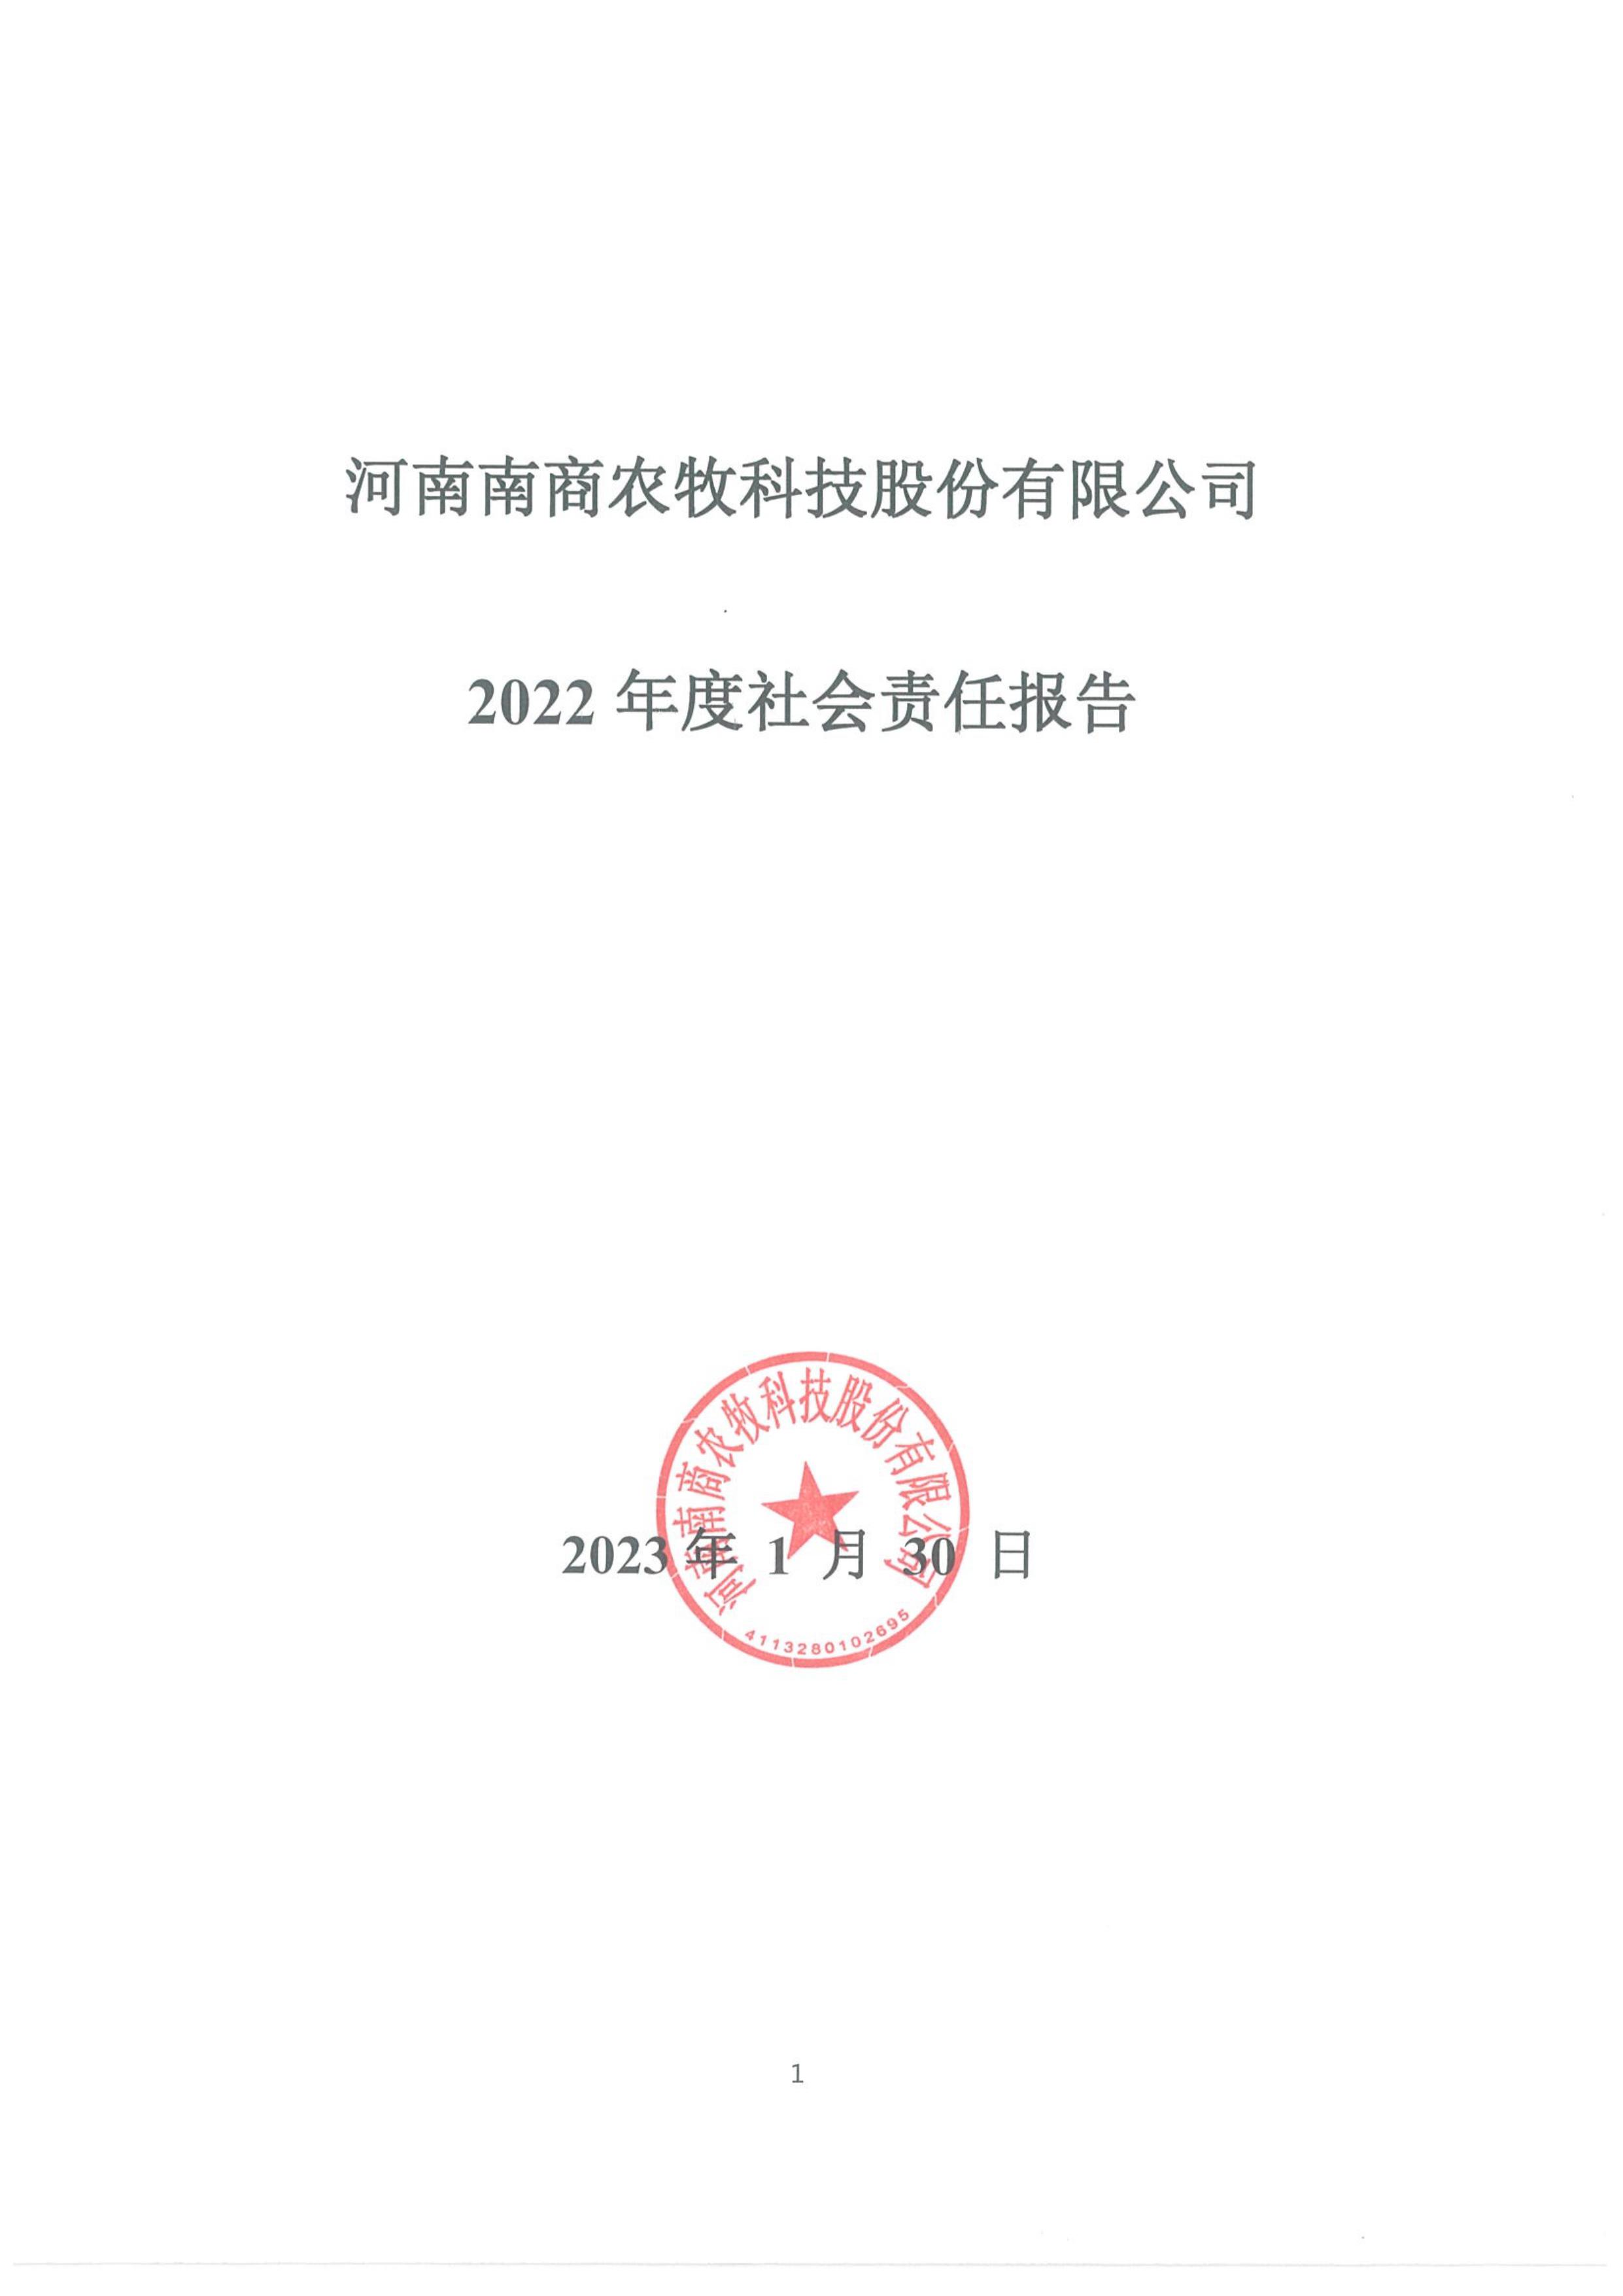 
2022年度社会责任报告